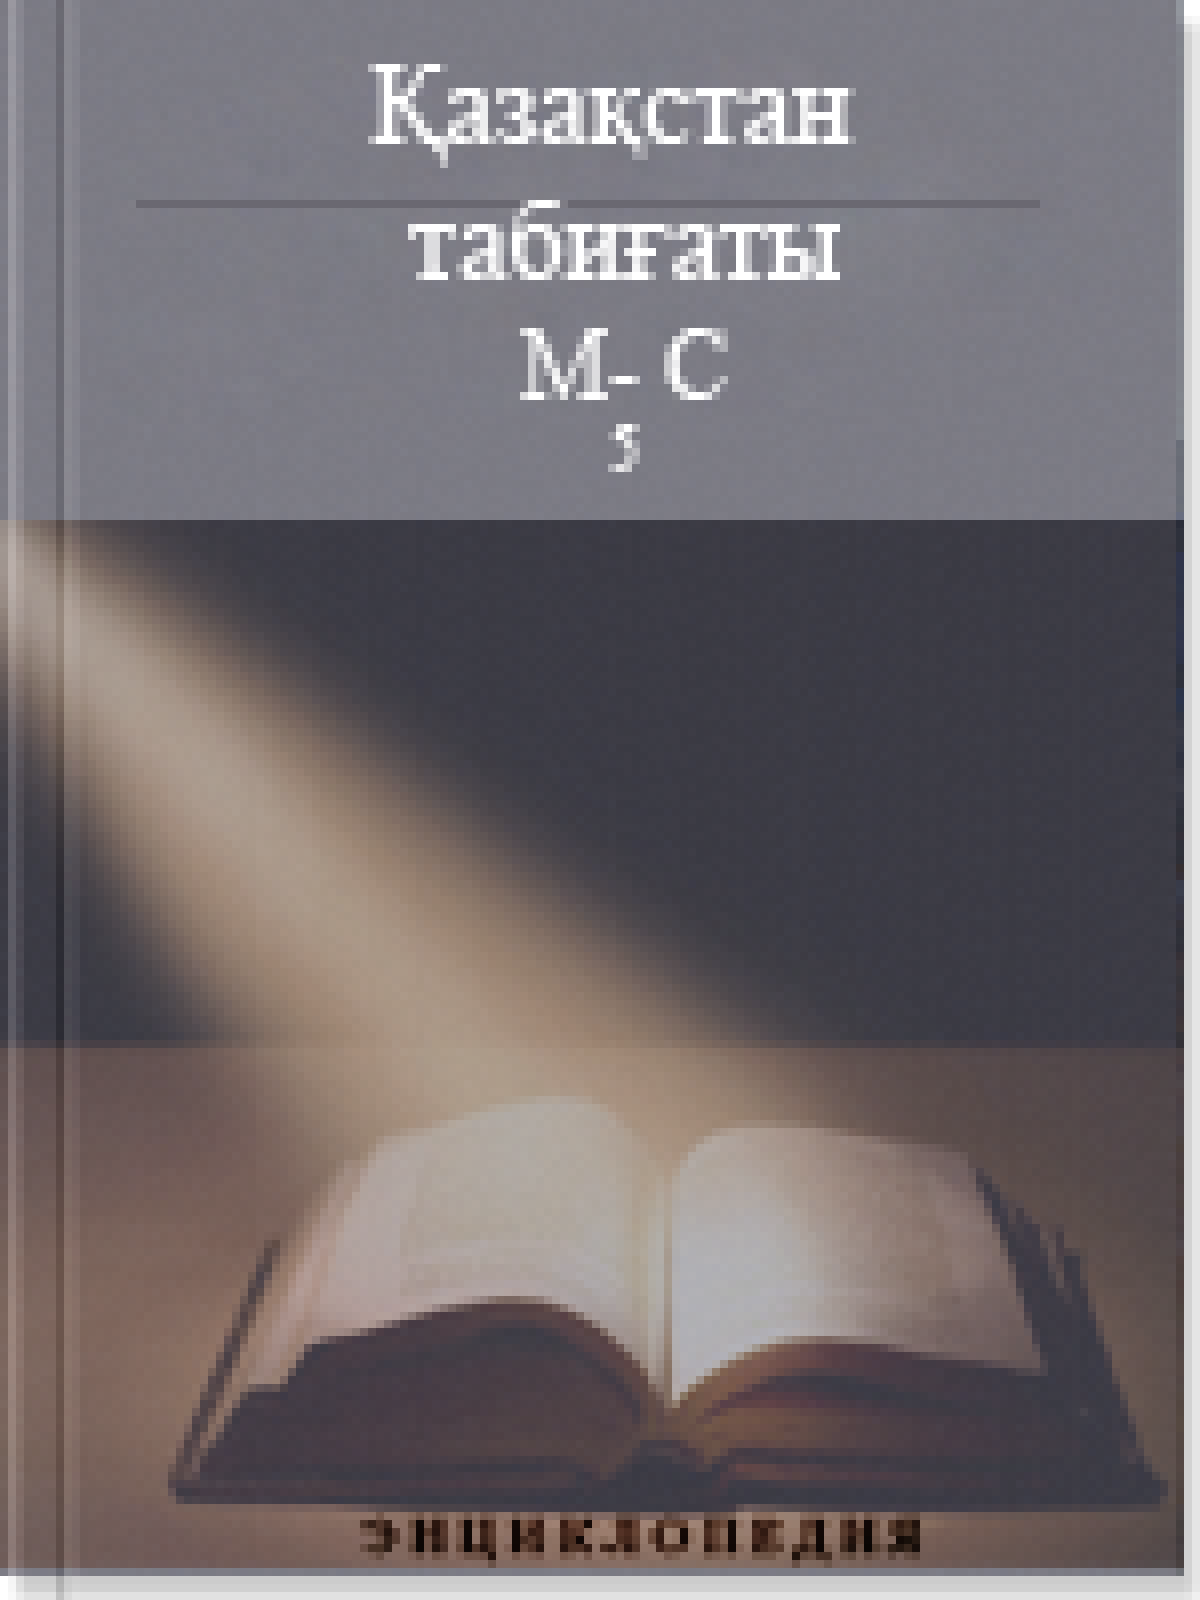 Қазақстан табиғаты 4 том М-С (5)